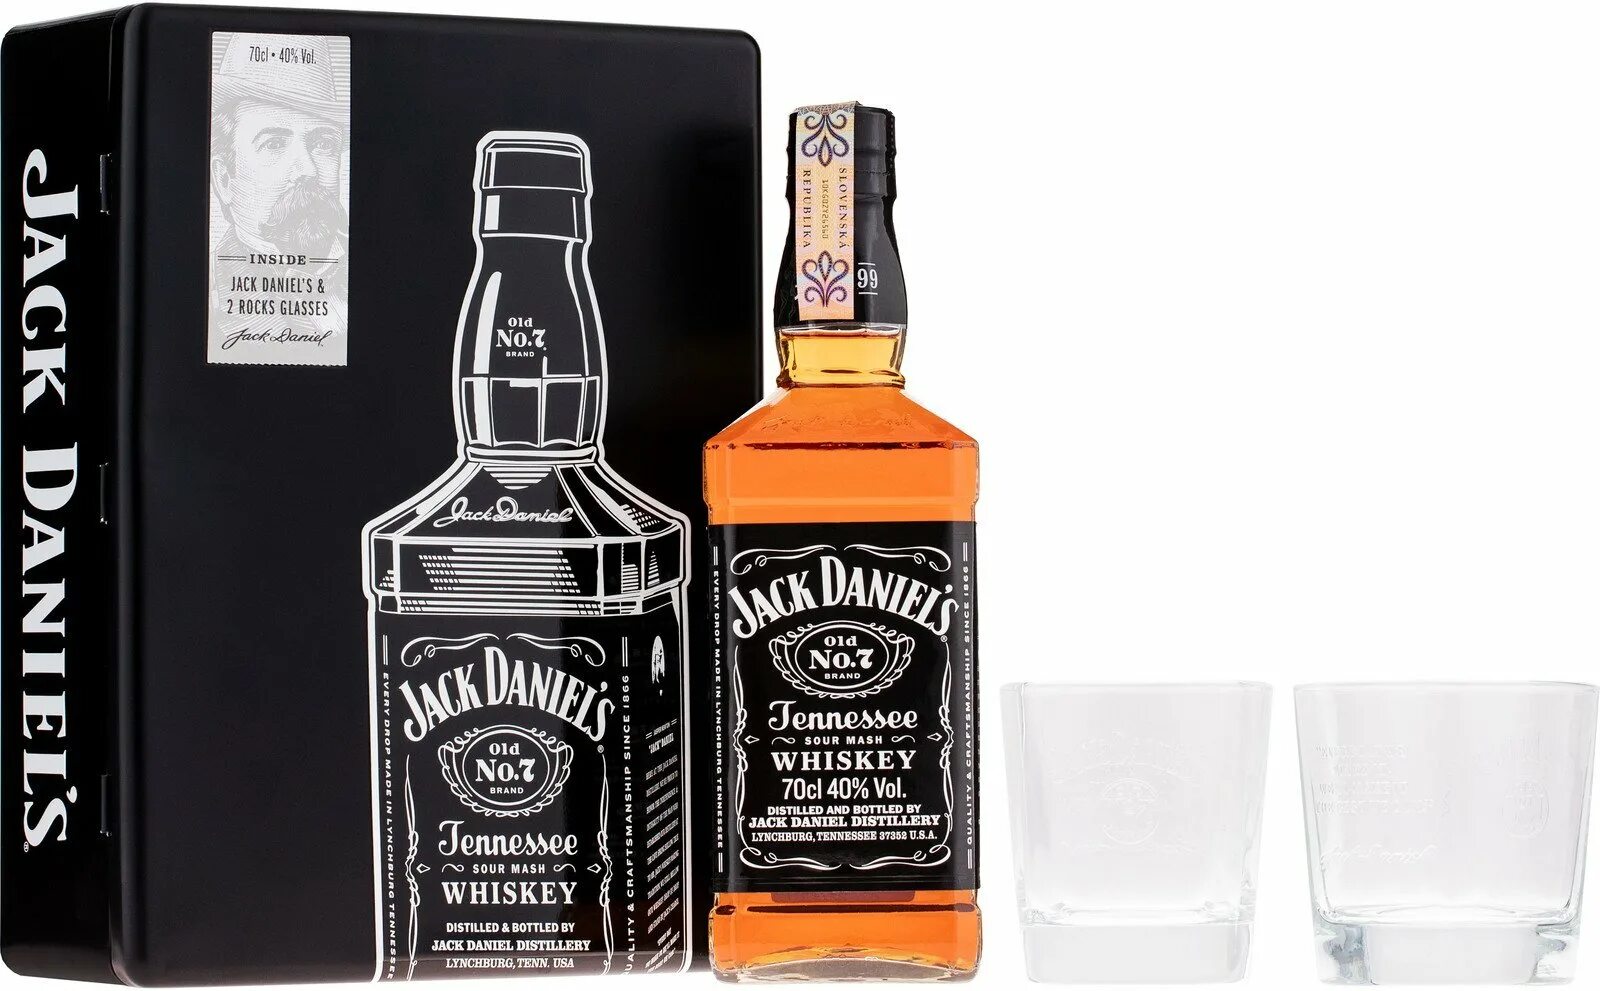 Джек дэниэлс это. Виски Джек Дэниэлс Бурбон. Виски Джек Дэниэлс 1 литр. Джек Дэниэлс виски 1 литр медовый. Американские виски Джек Дэниэлс.